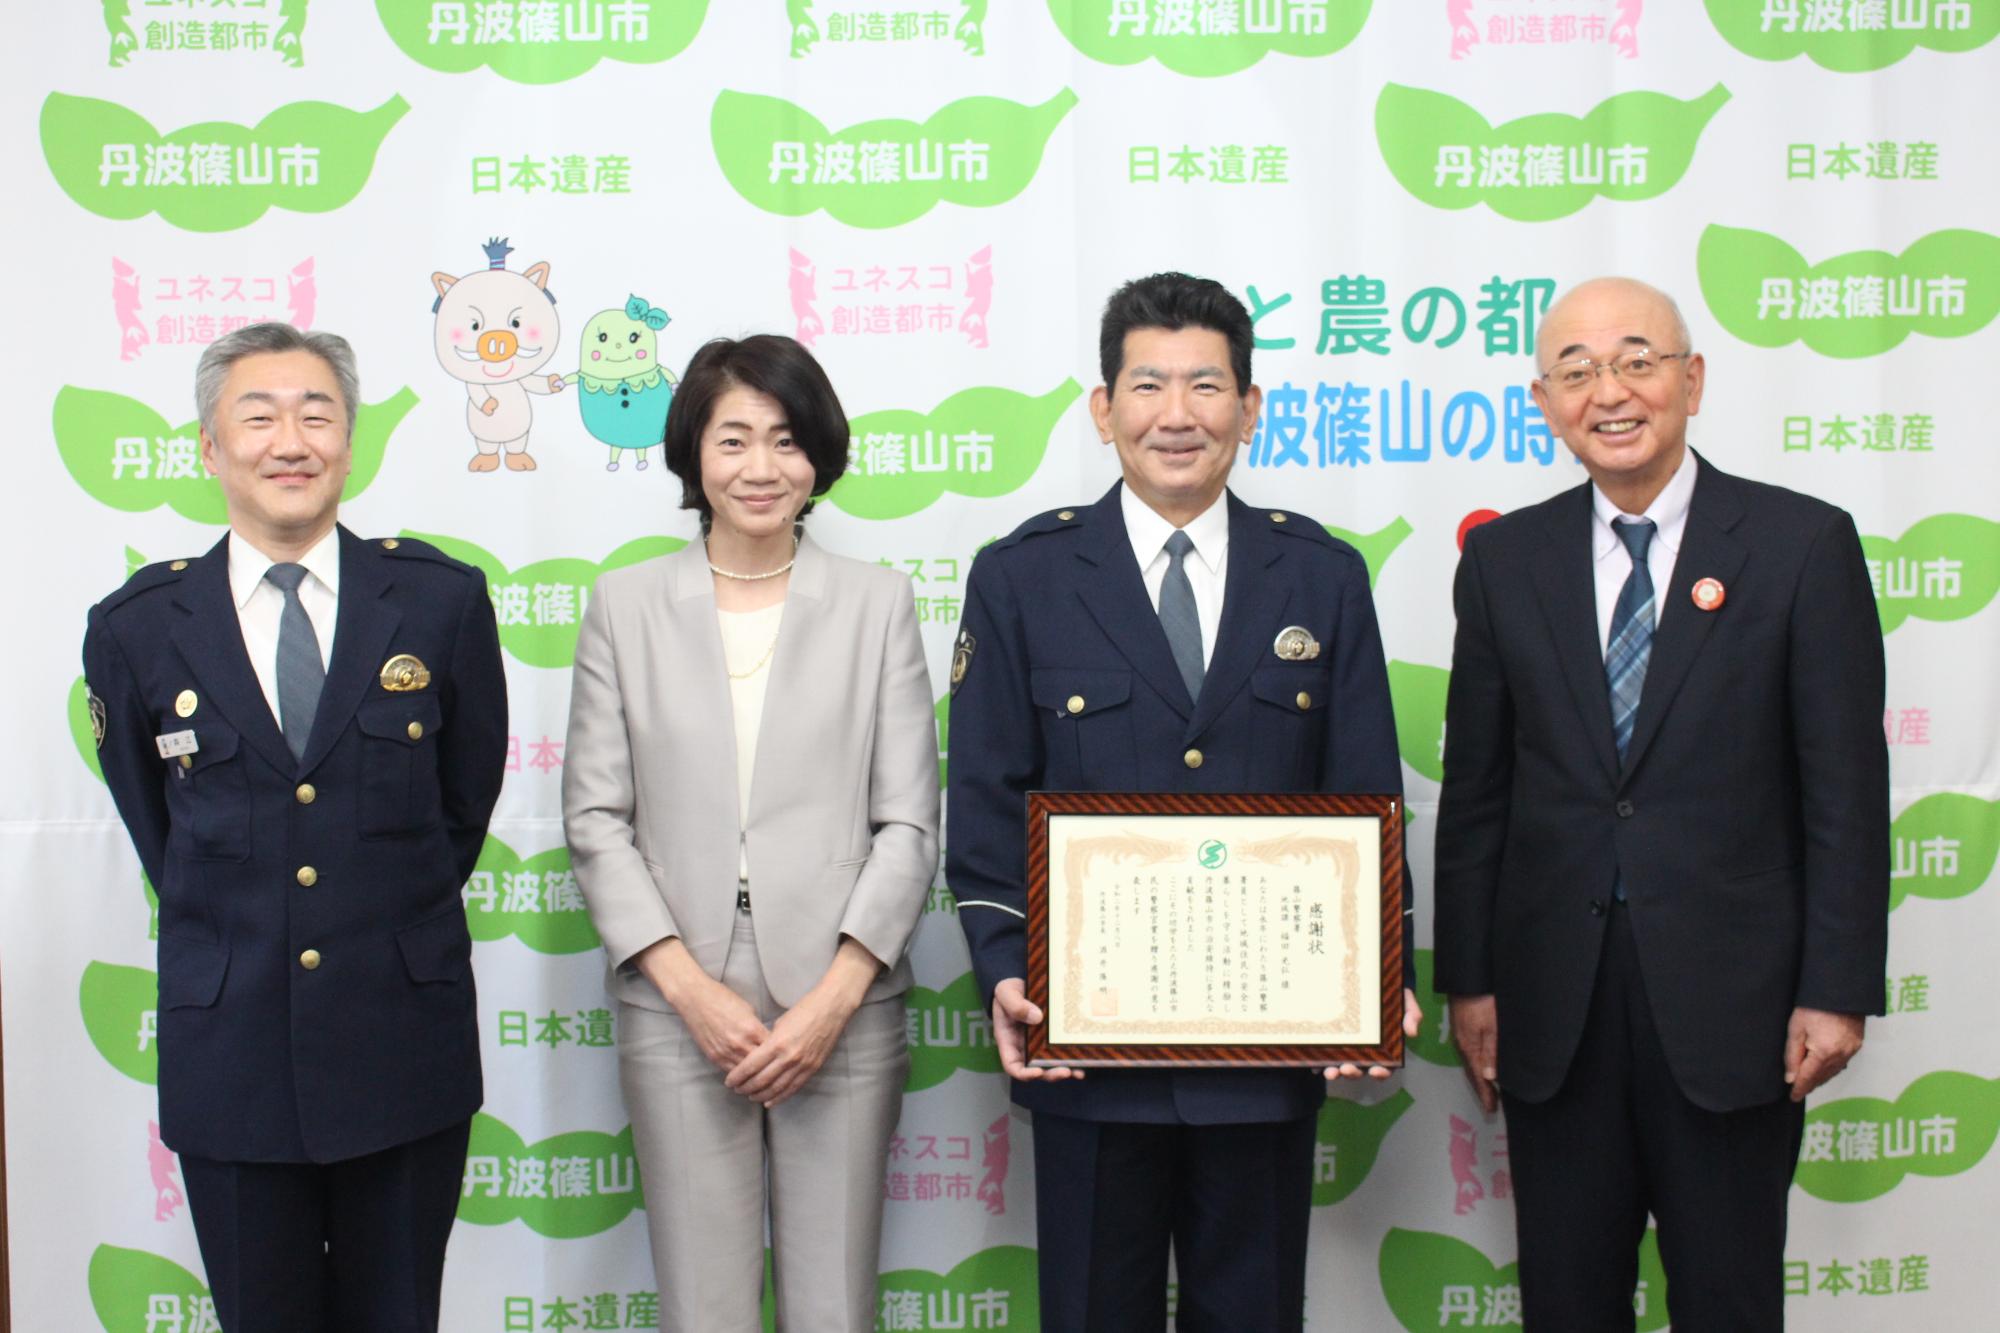 表彰状を手に持つ福田さんと奥様、その隣に市長と署長が並んで立っている